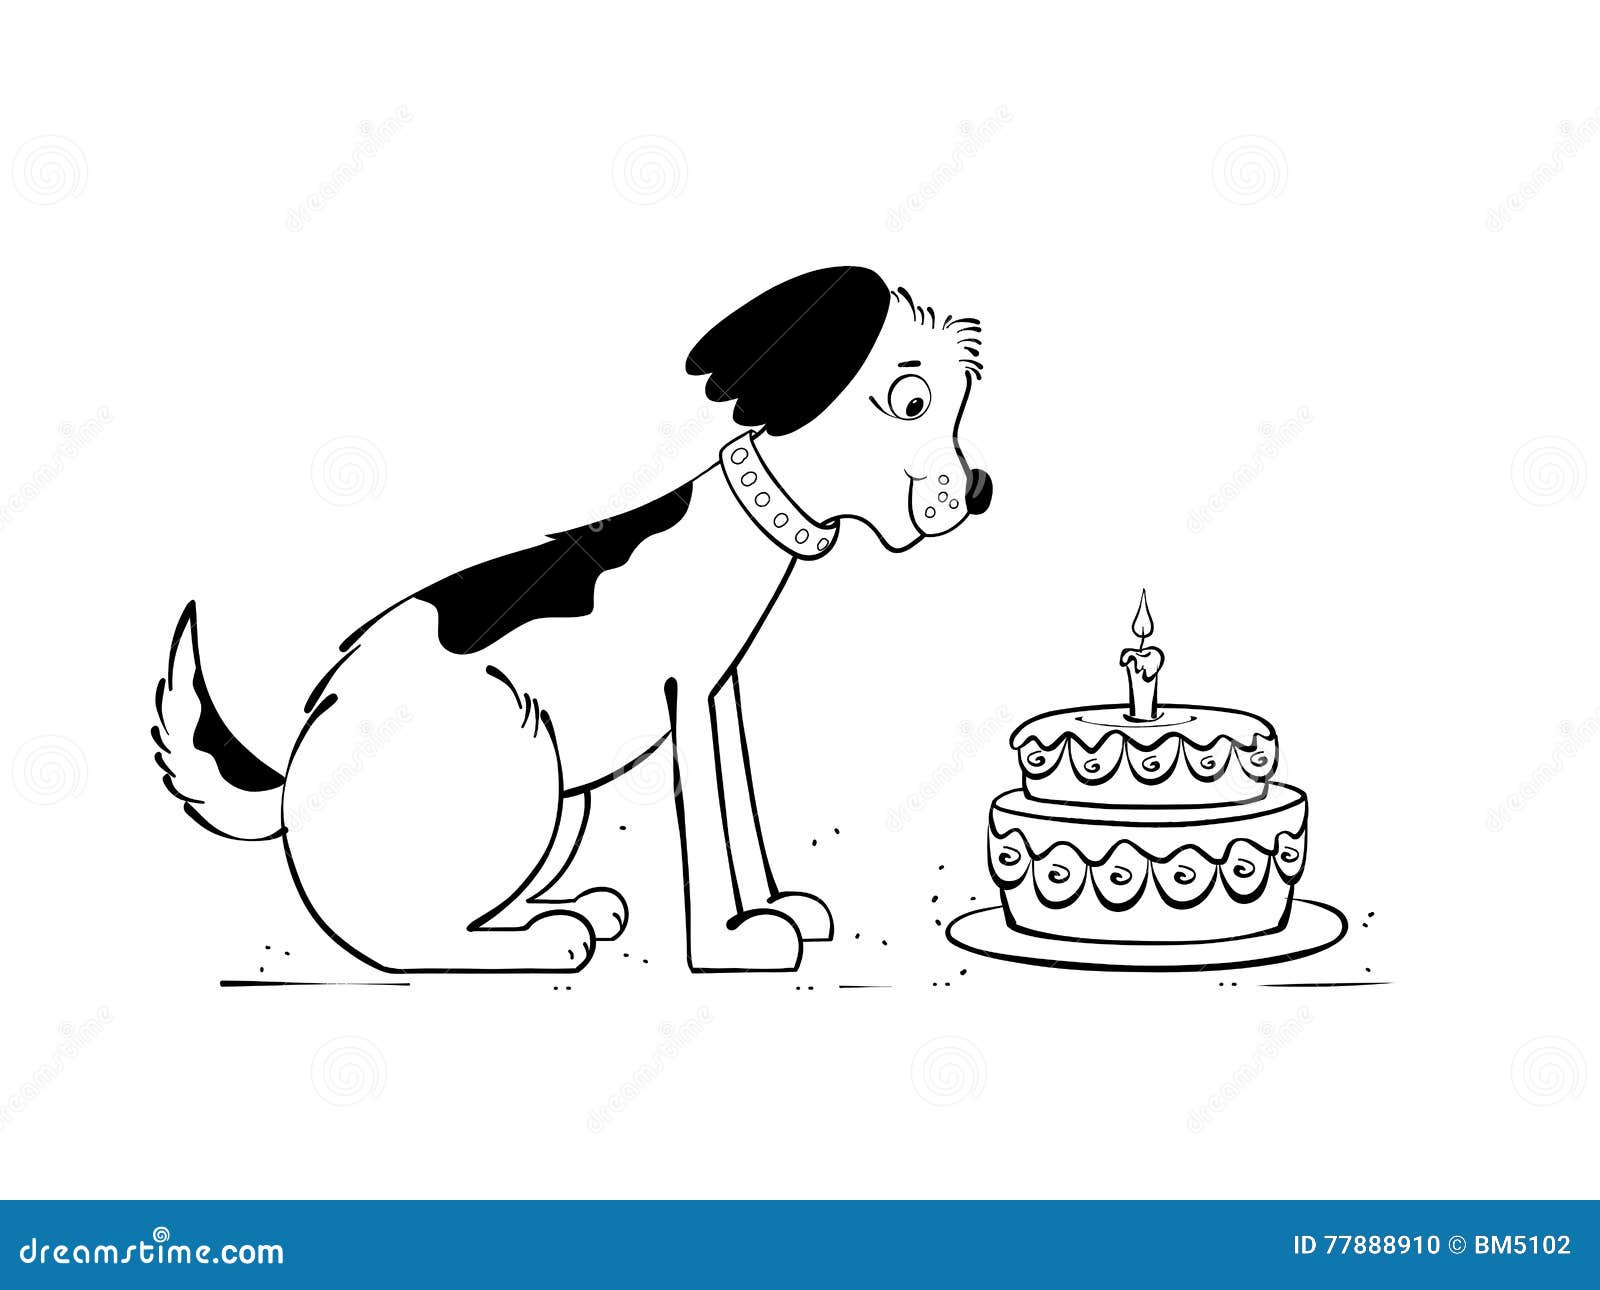 狗蛋糕和牛軟心蛋糕, 寵物用品, 寵物食品 - Carousell